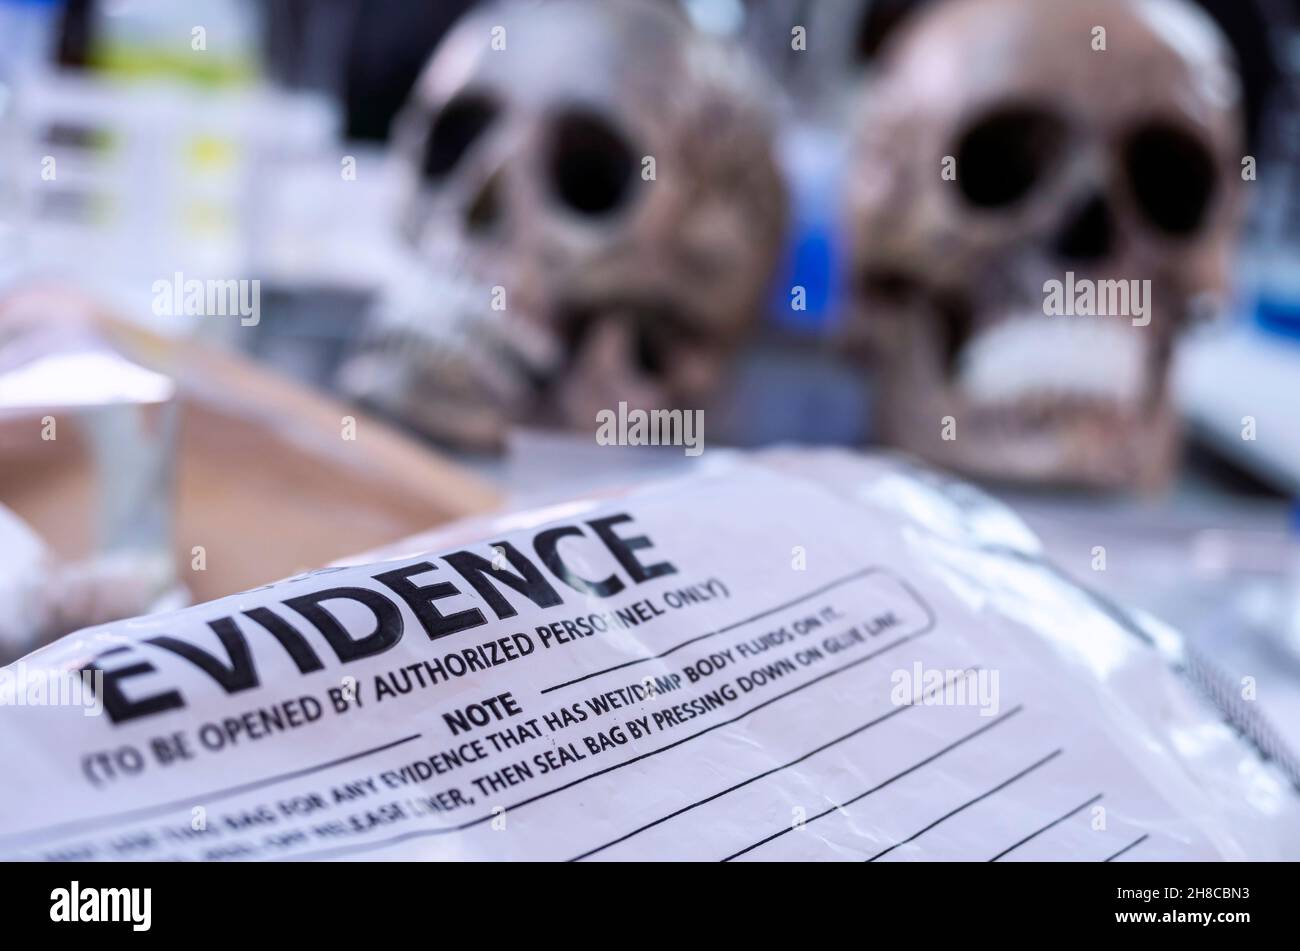 Plusieurs crânes humains à côté d'un sac de preuves pour déterminer l'ADN en laboratoire médico-légal Banque D'Images